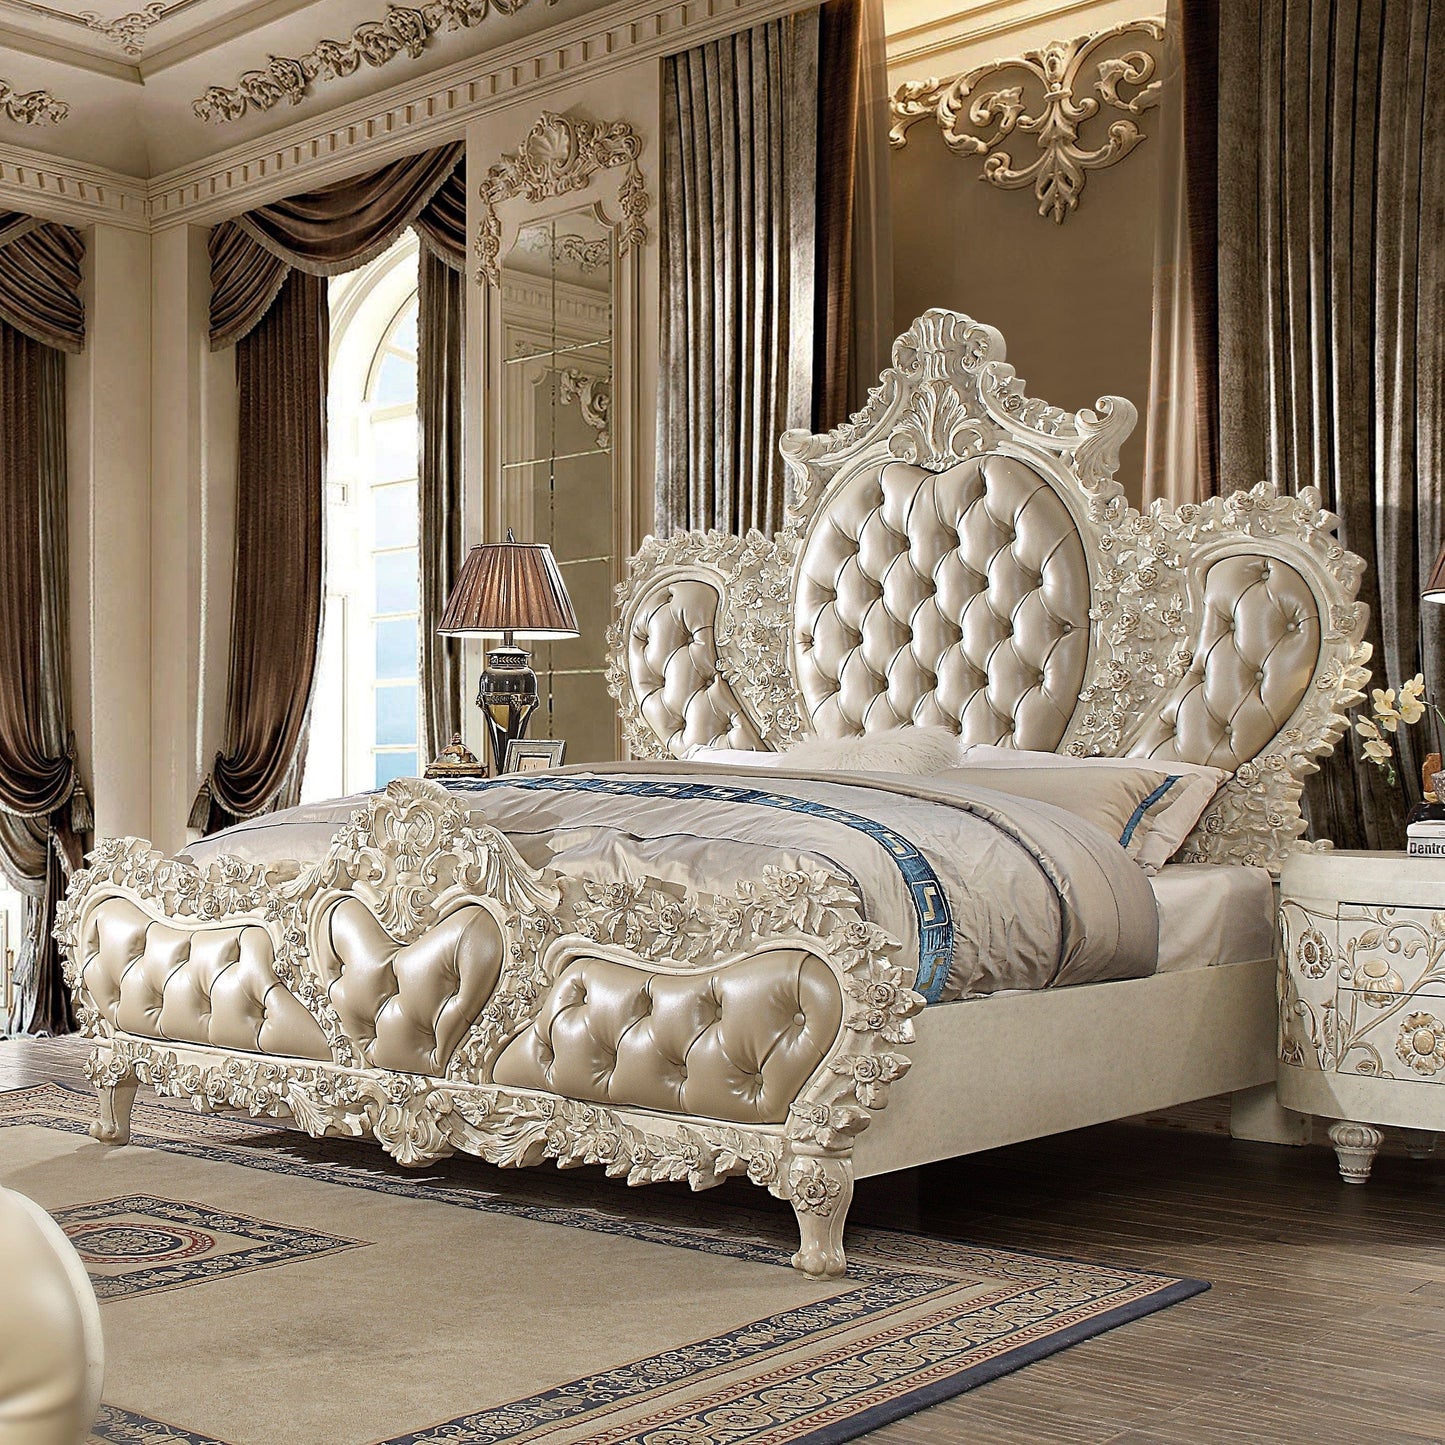 Carved Luxury Tufted Bed Homey DesignHD-8030 - Ek Bed